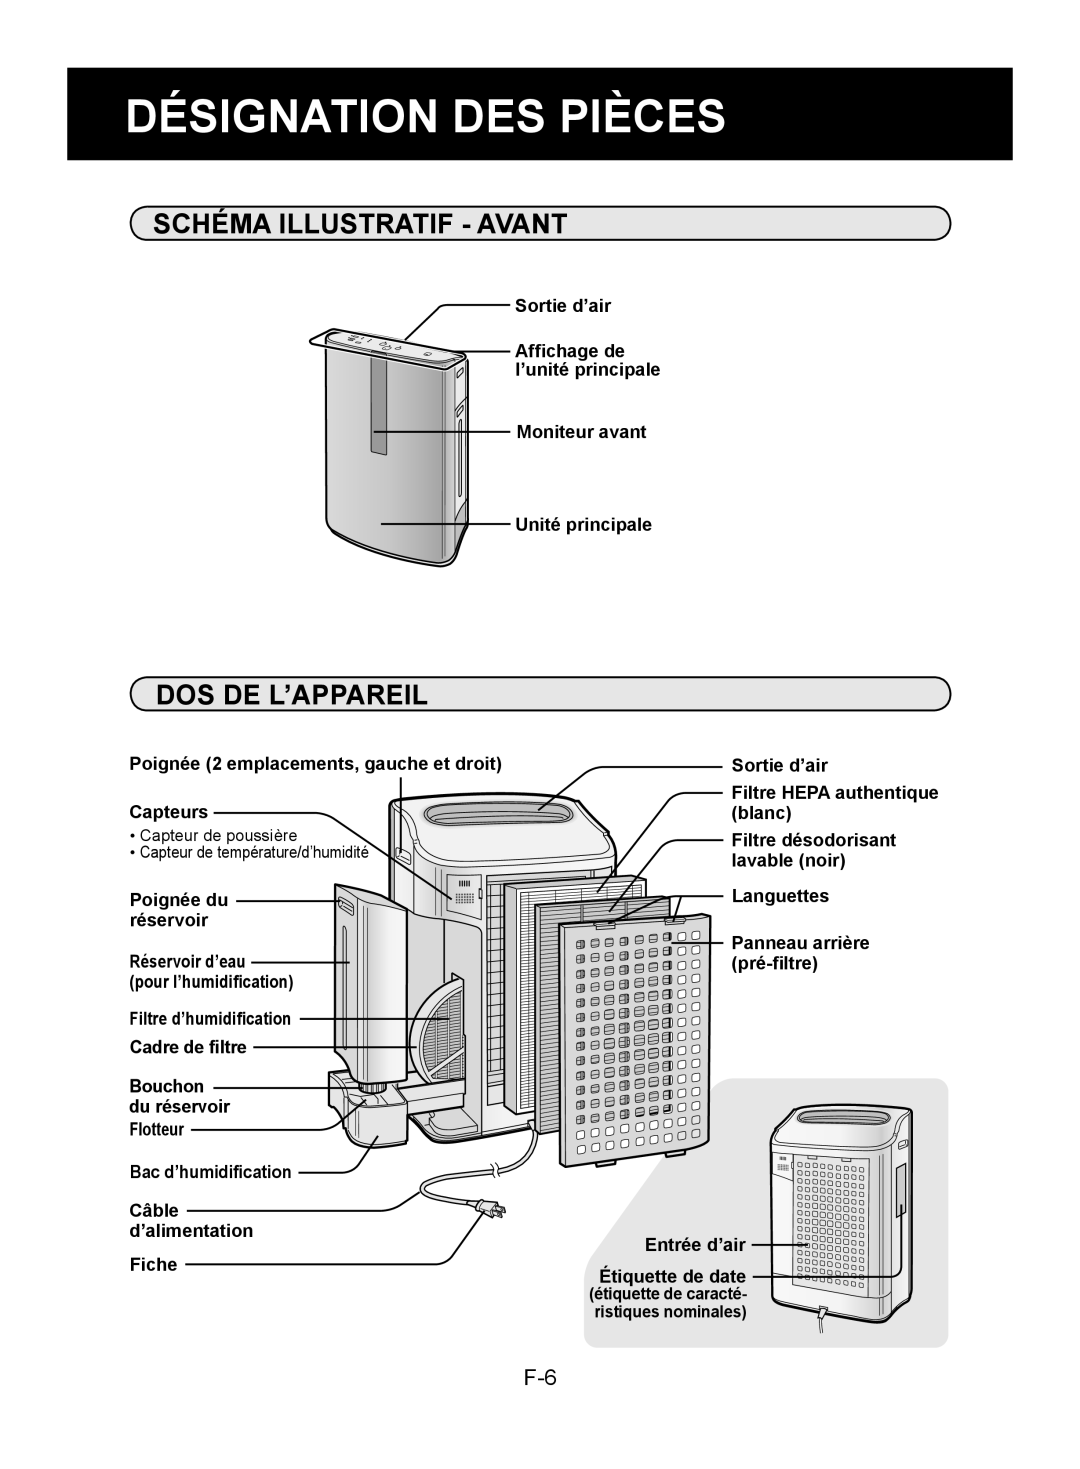 Sharp KC-850U operation manual Désignation Des Pièces, Schéma Illustratif - Avant, Dos De L’Appareil 